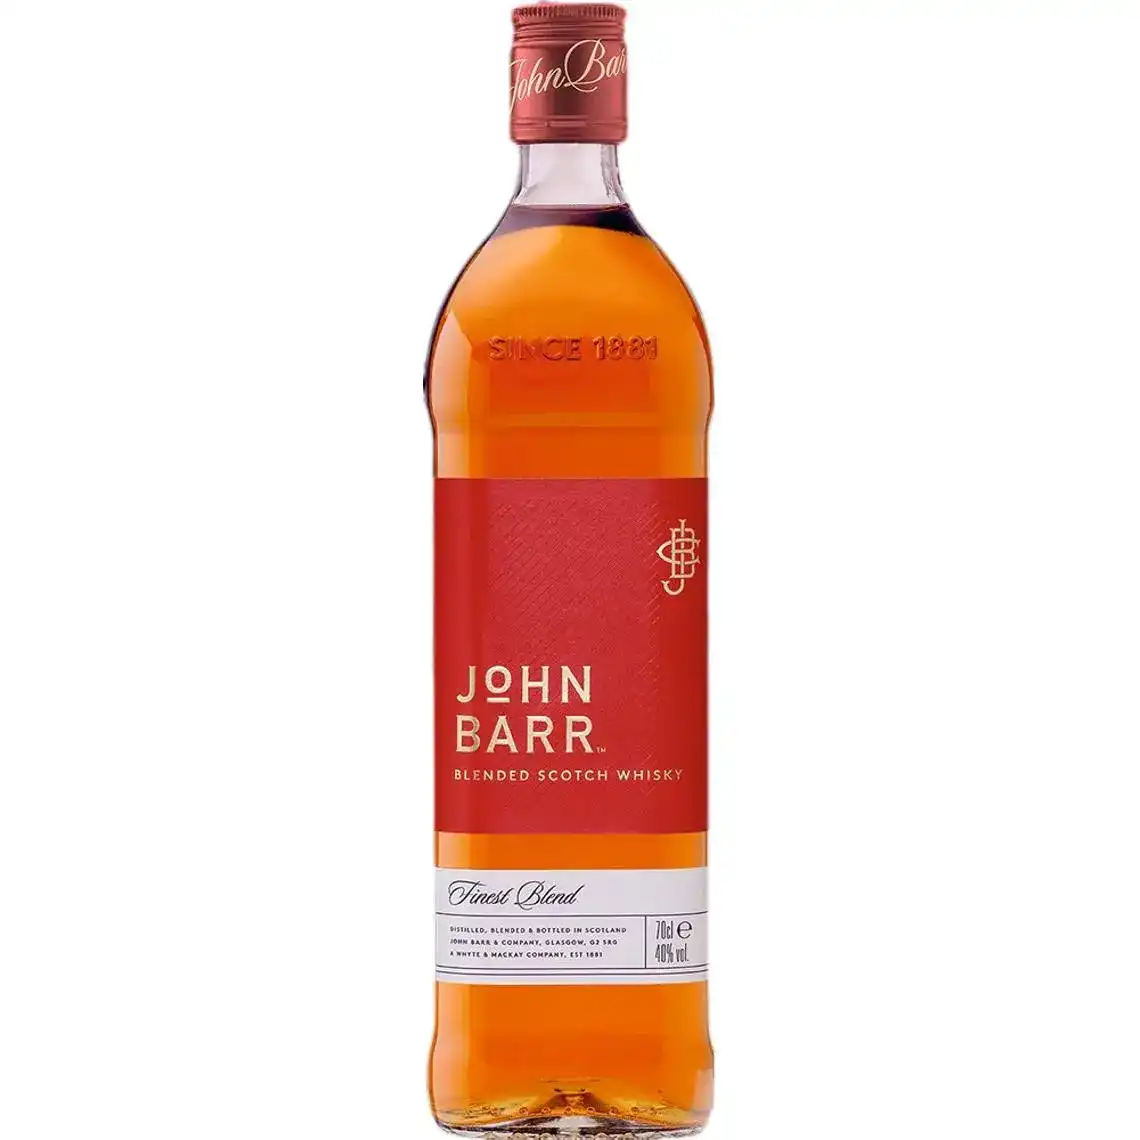 Виски John Barr Finest купажированный 3 года выдержки 40% 0.7 л